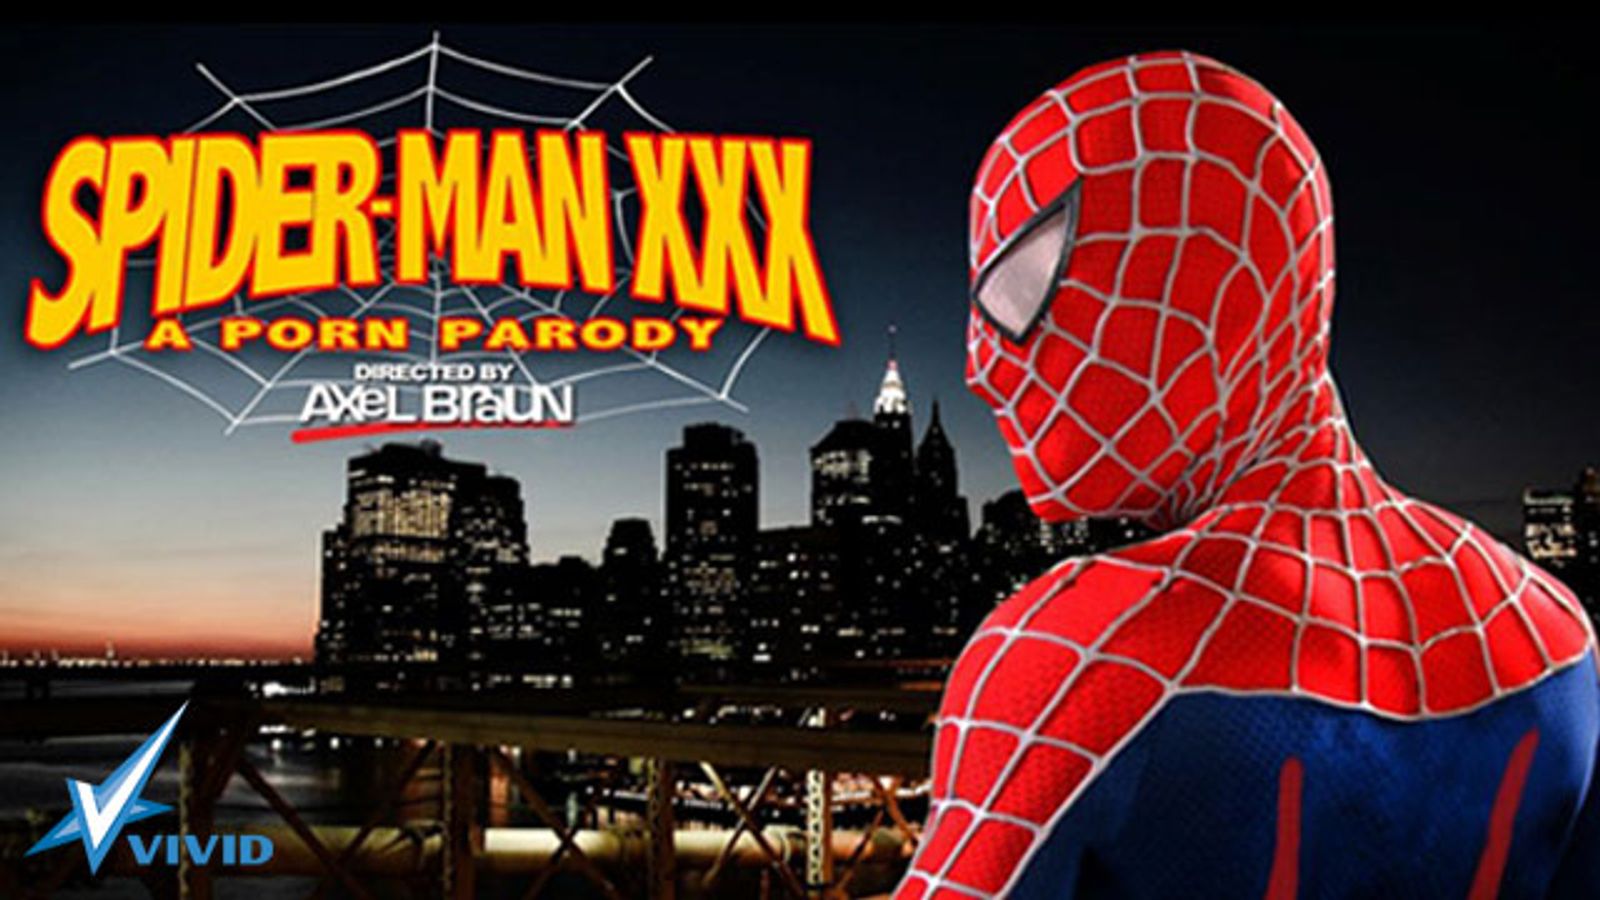 Vivid’s Spider-Man XXX Parody Spins Big Web at AVN Awards